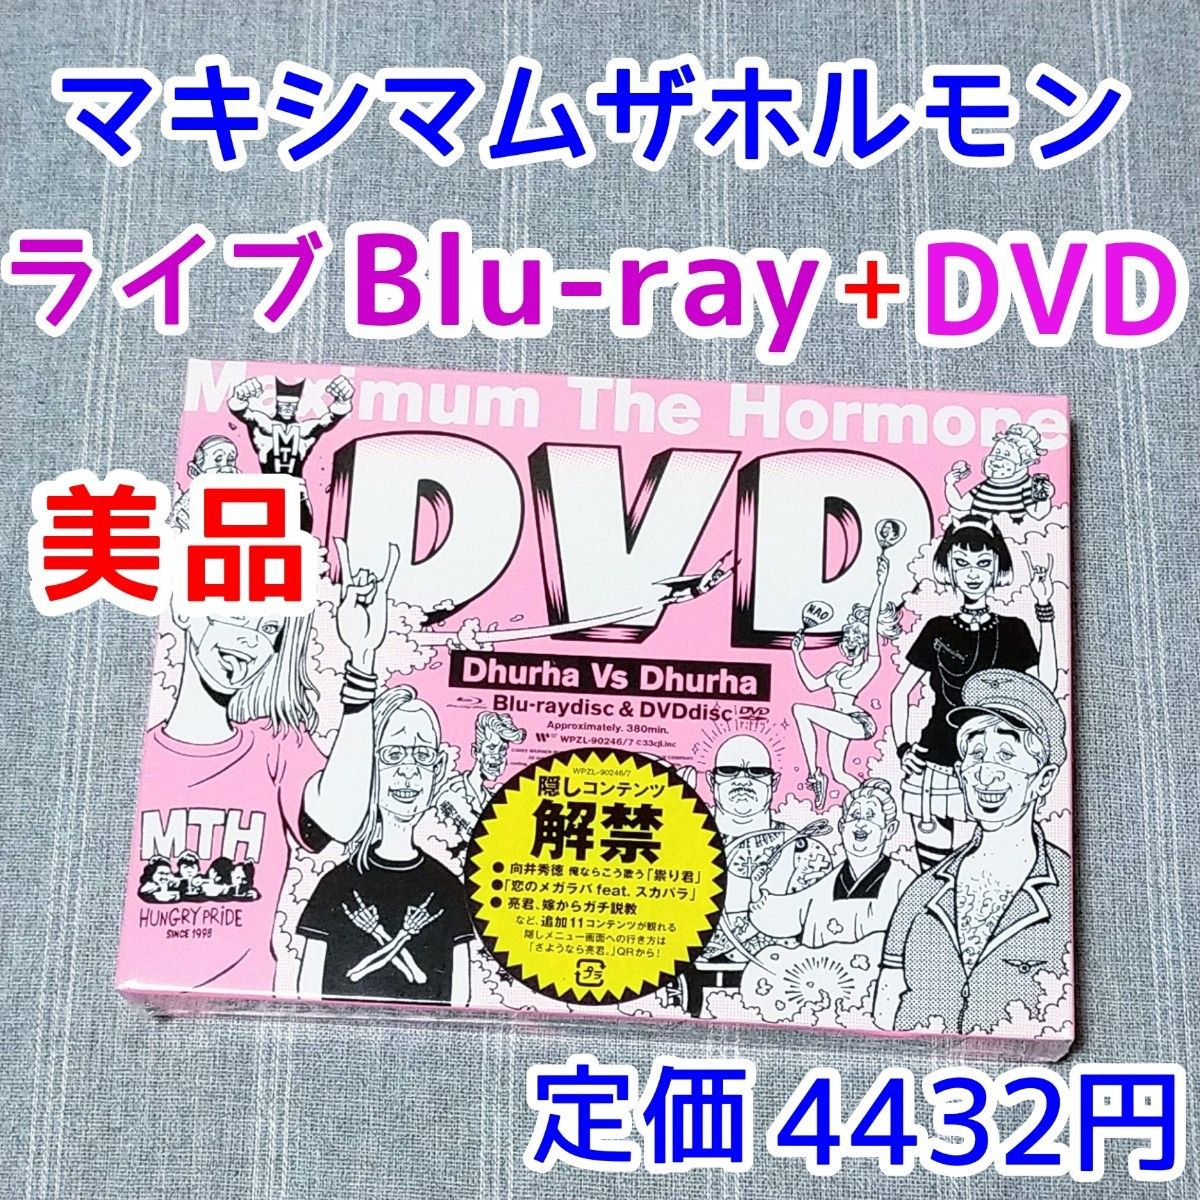 ライブBlu-ray　DVD マキシマムザホルモン Dhurha Vs Dhurha　ヅラ対ヅラ　ヘビーメタル　ハードロック